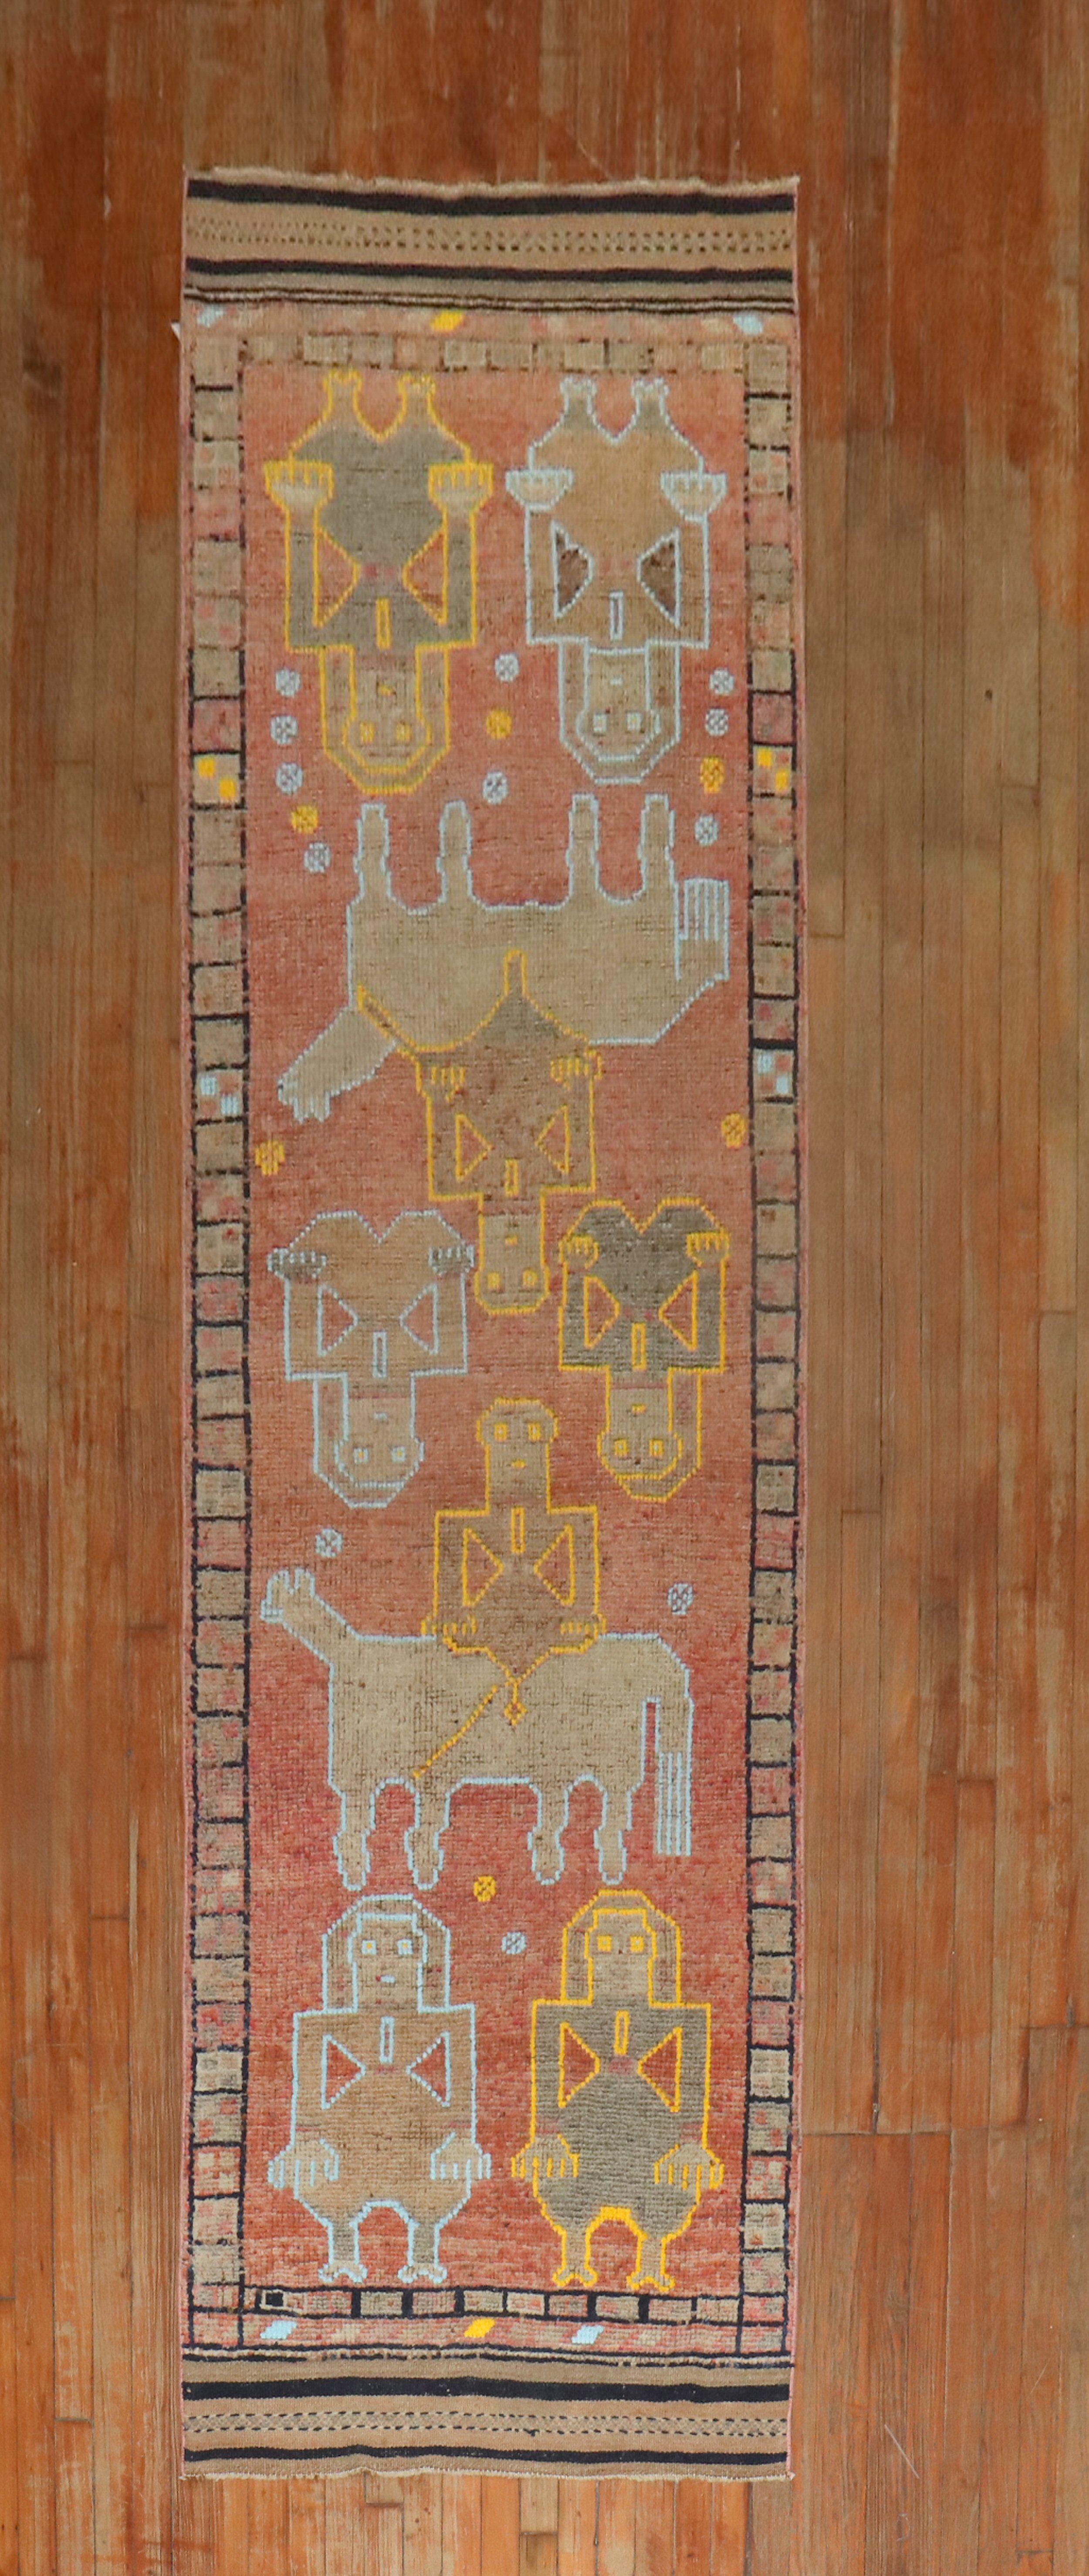 Tapis décoratif unique en son genre, coloré, datant du milieu du 20e siècle et représentant des animaux et des humains.

Mesures : 3' x 10'11''